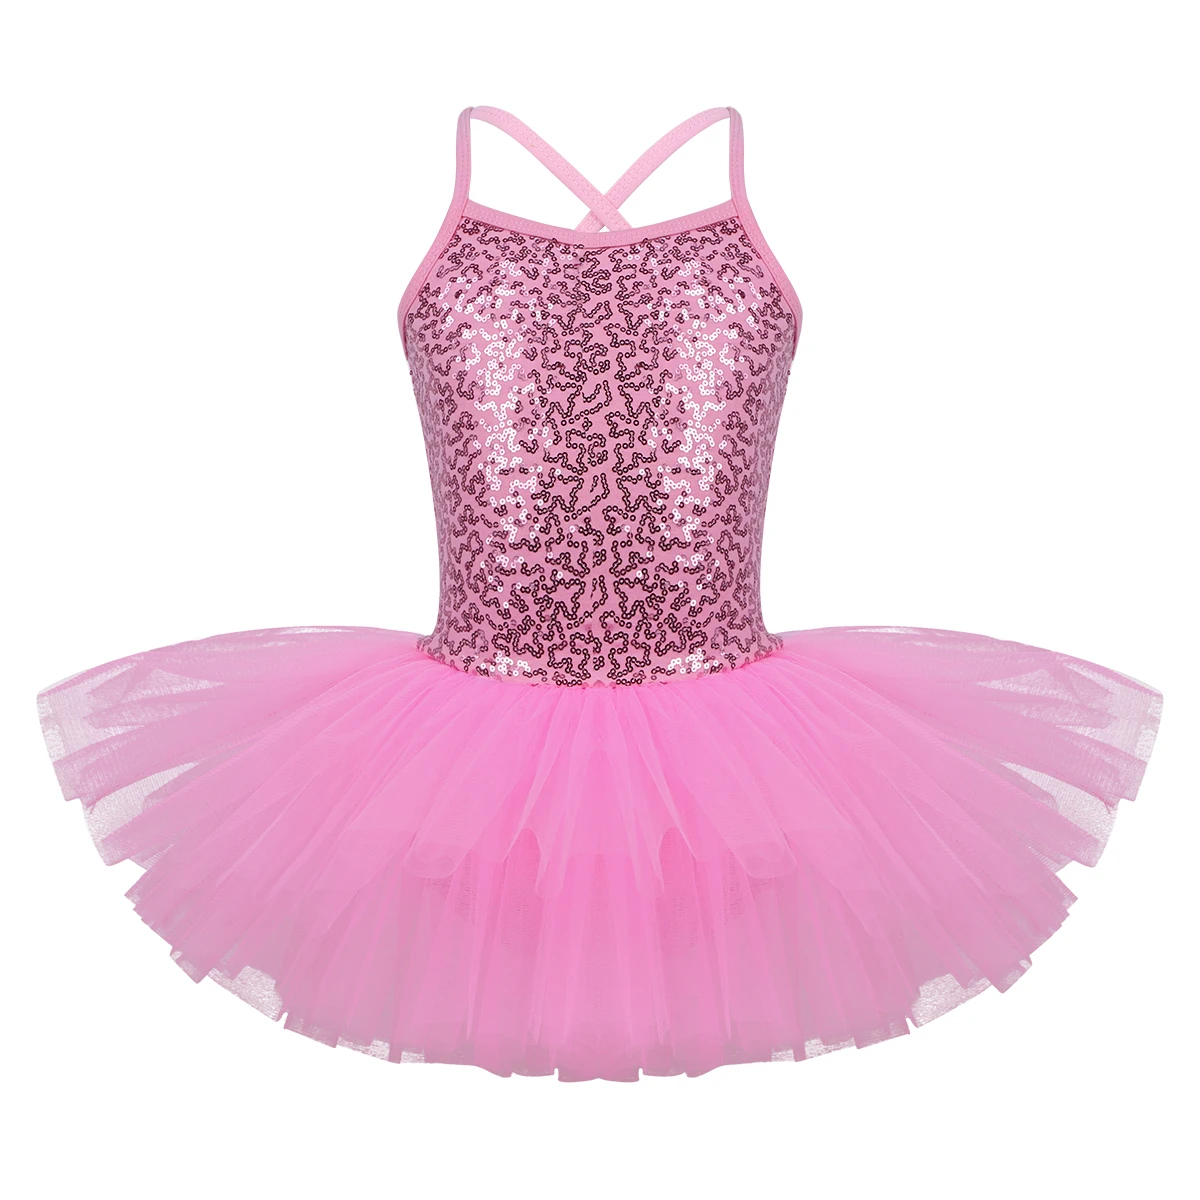 Iiniim/Для девочек светоотражающий нарядное лиричная Танцы класса костюмы ребенок балетное платье-пачка танцев гимнастическое платье-пачка с трико - Цвет: Pink